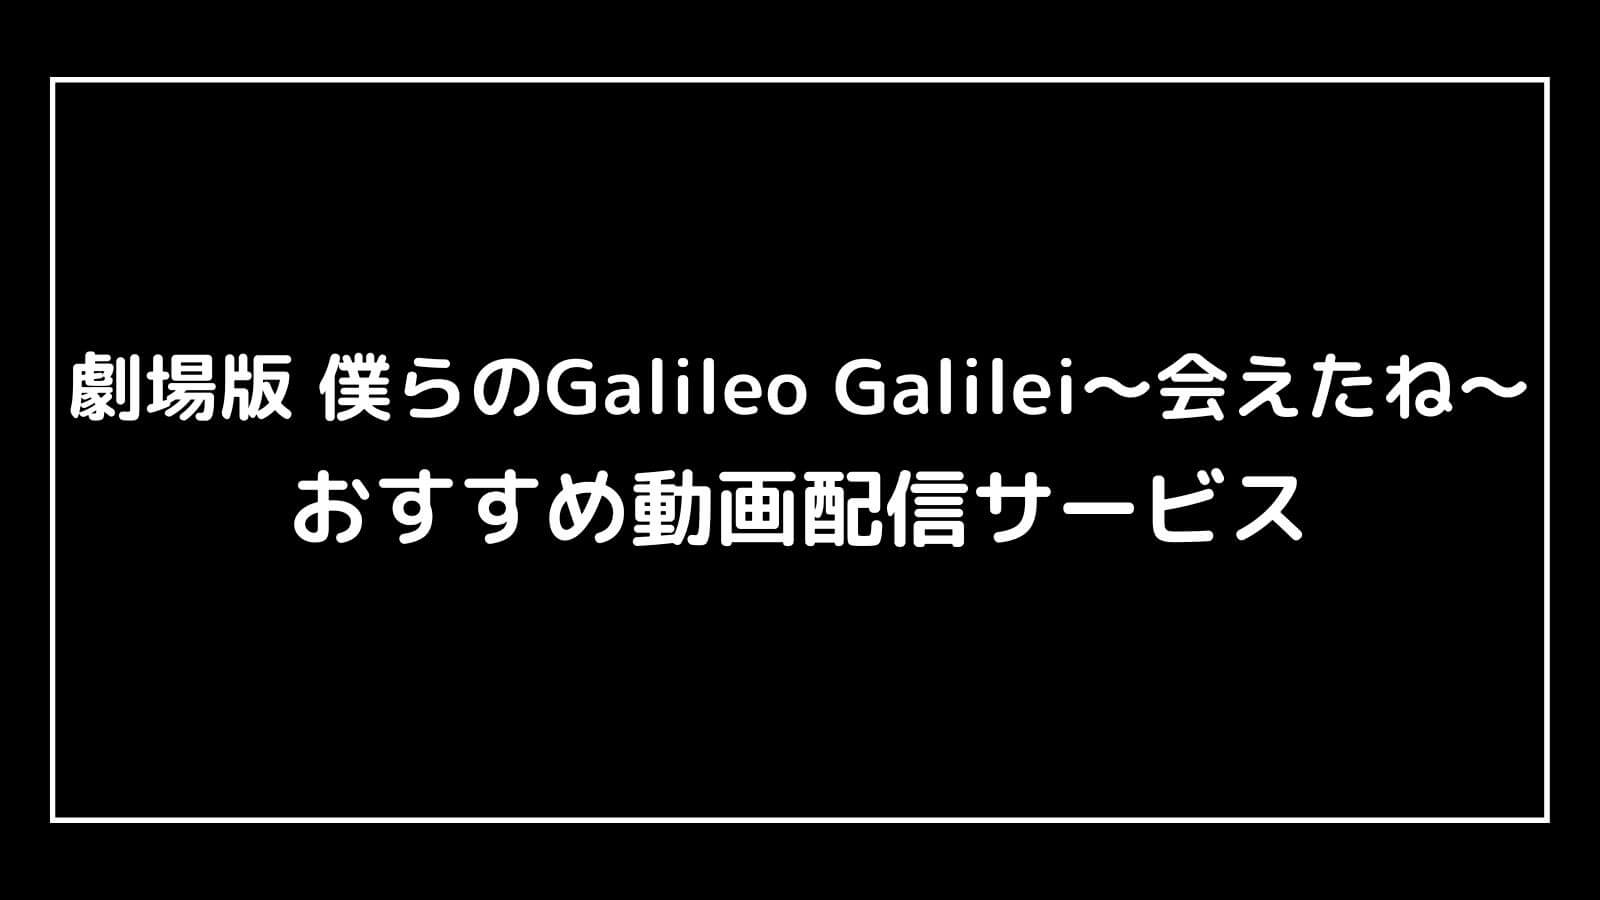 劇場版 僕らのGalileo Galilei〜会えたね〜｜映画の動画配信を実質無料でフル視聴できるサブスクまとめ